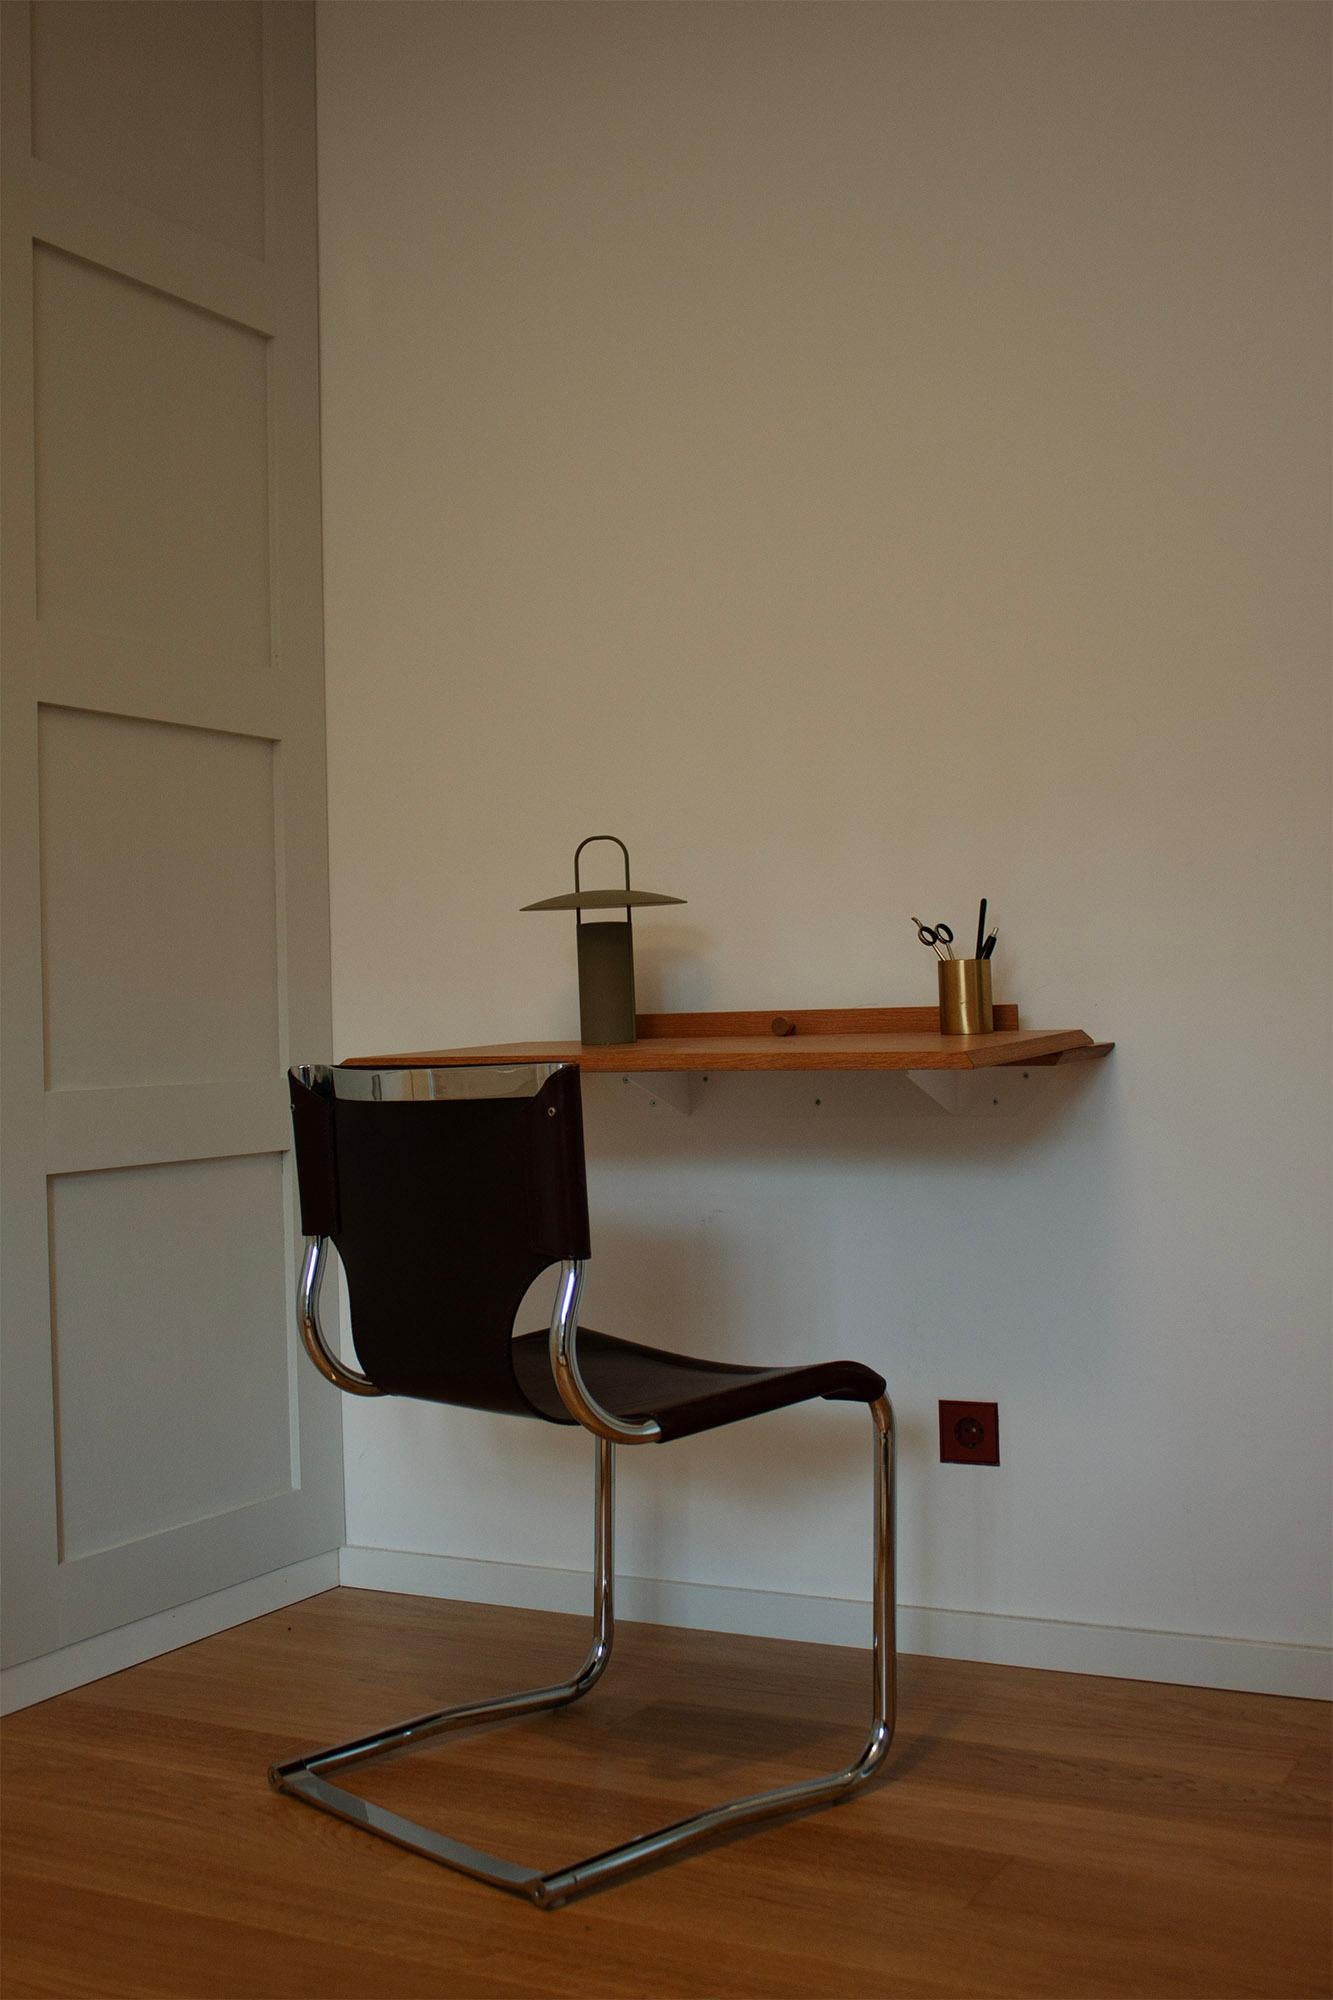 Une chaise de salle à manger ou de bureau italienne vintage du milieu du siècle moderne 920C, conçue par Carlo Bartoli et produite par Tisettana vers 1970, est disponible. Cette chaise se distingue par sa qualité de fabrication et son souci du